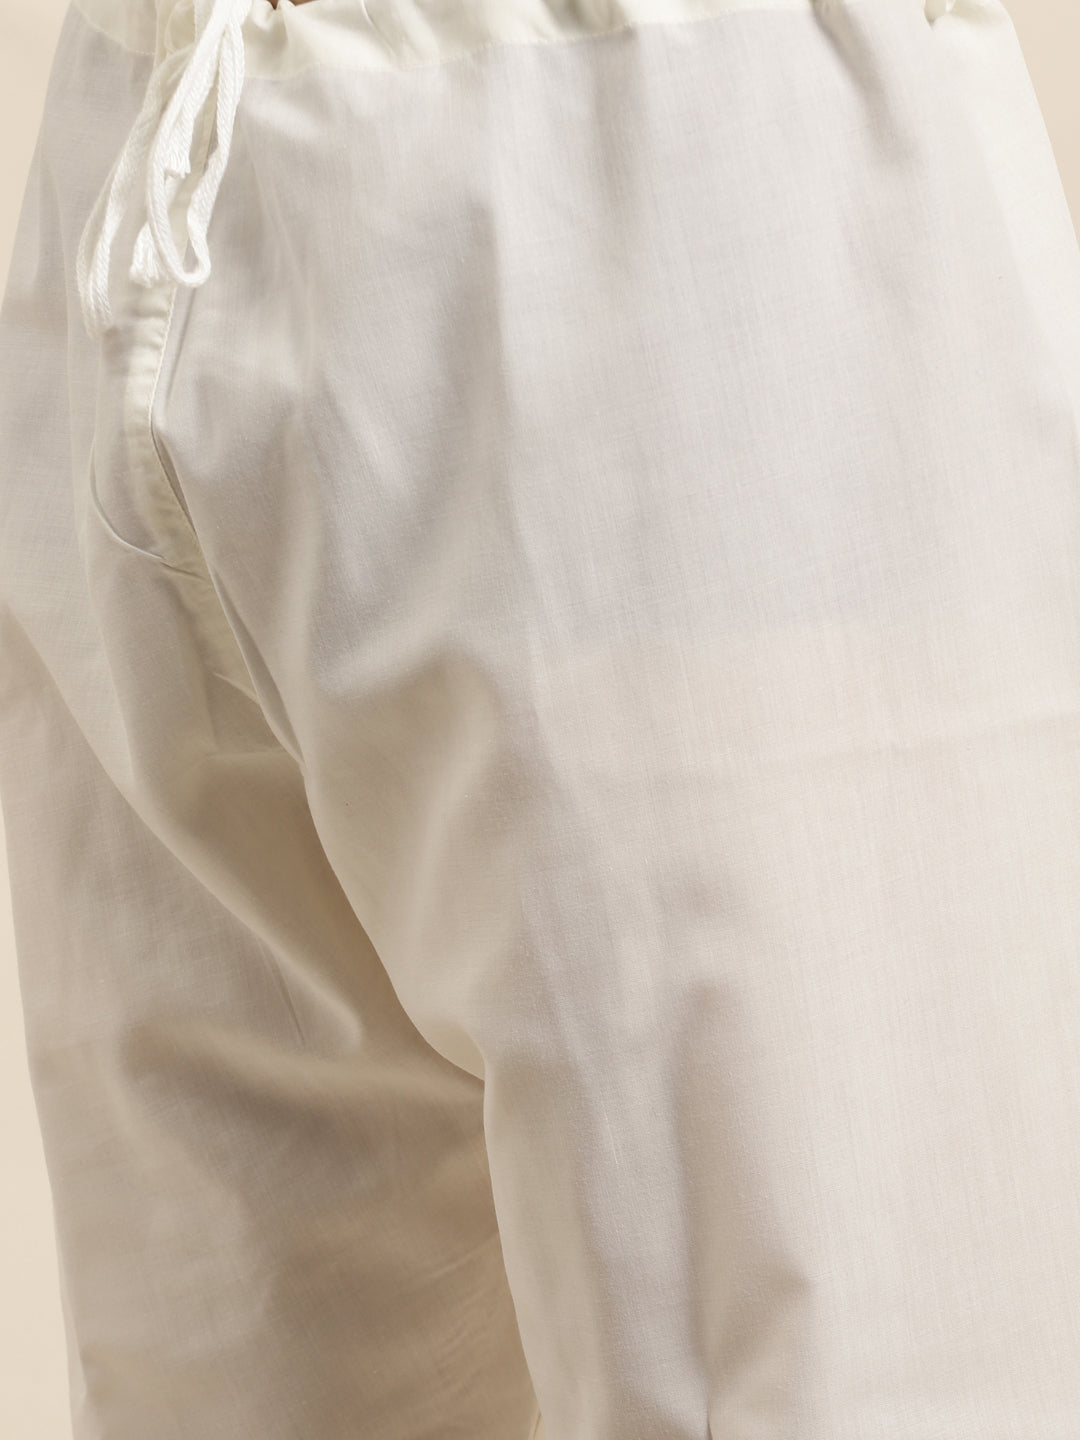 Men's Jacquard Silk Blue & Gold Kurta & Off-White Churidar Pyjama Set - Sojanya